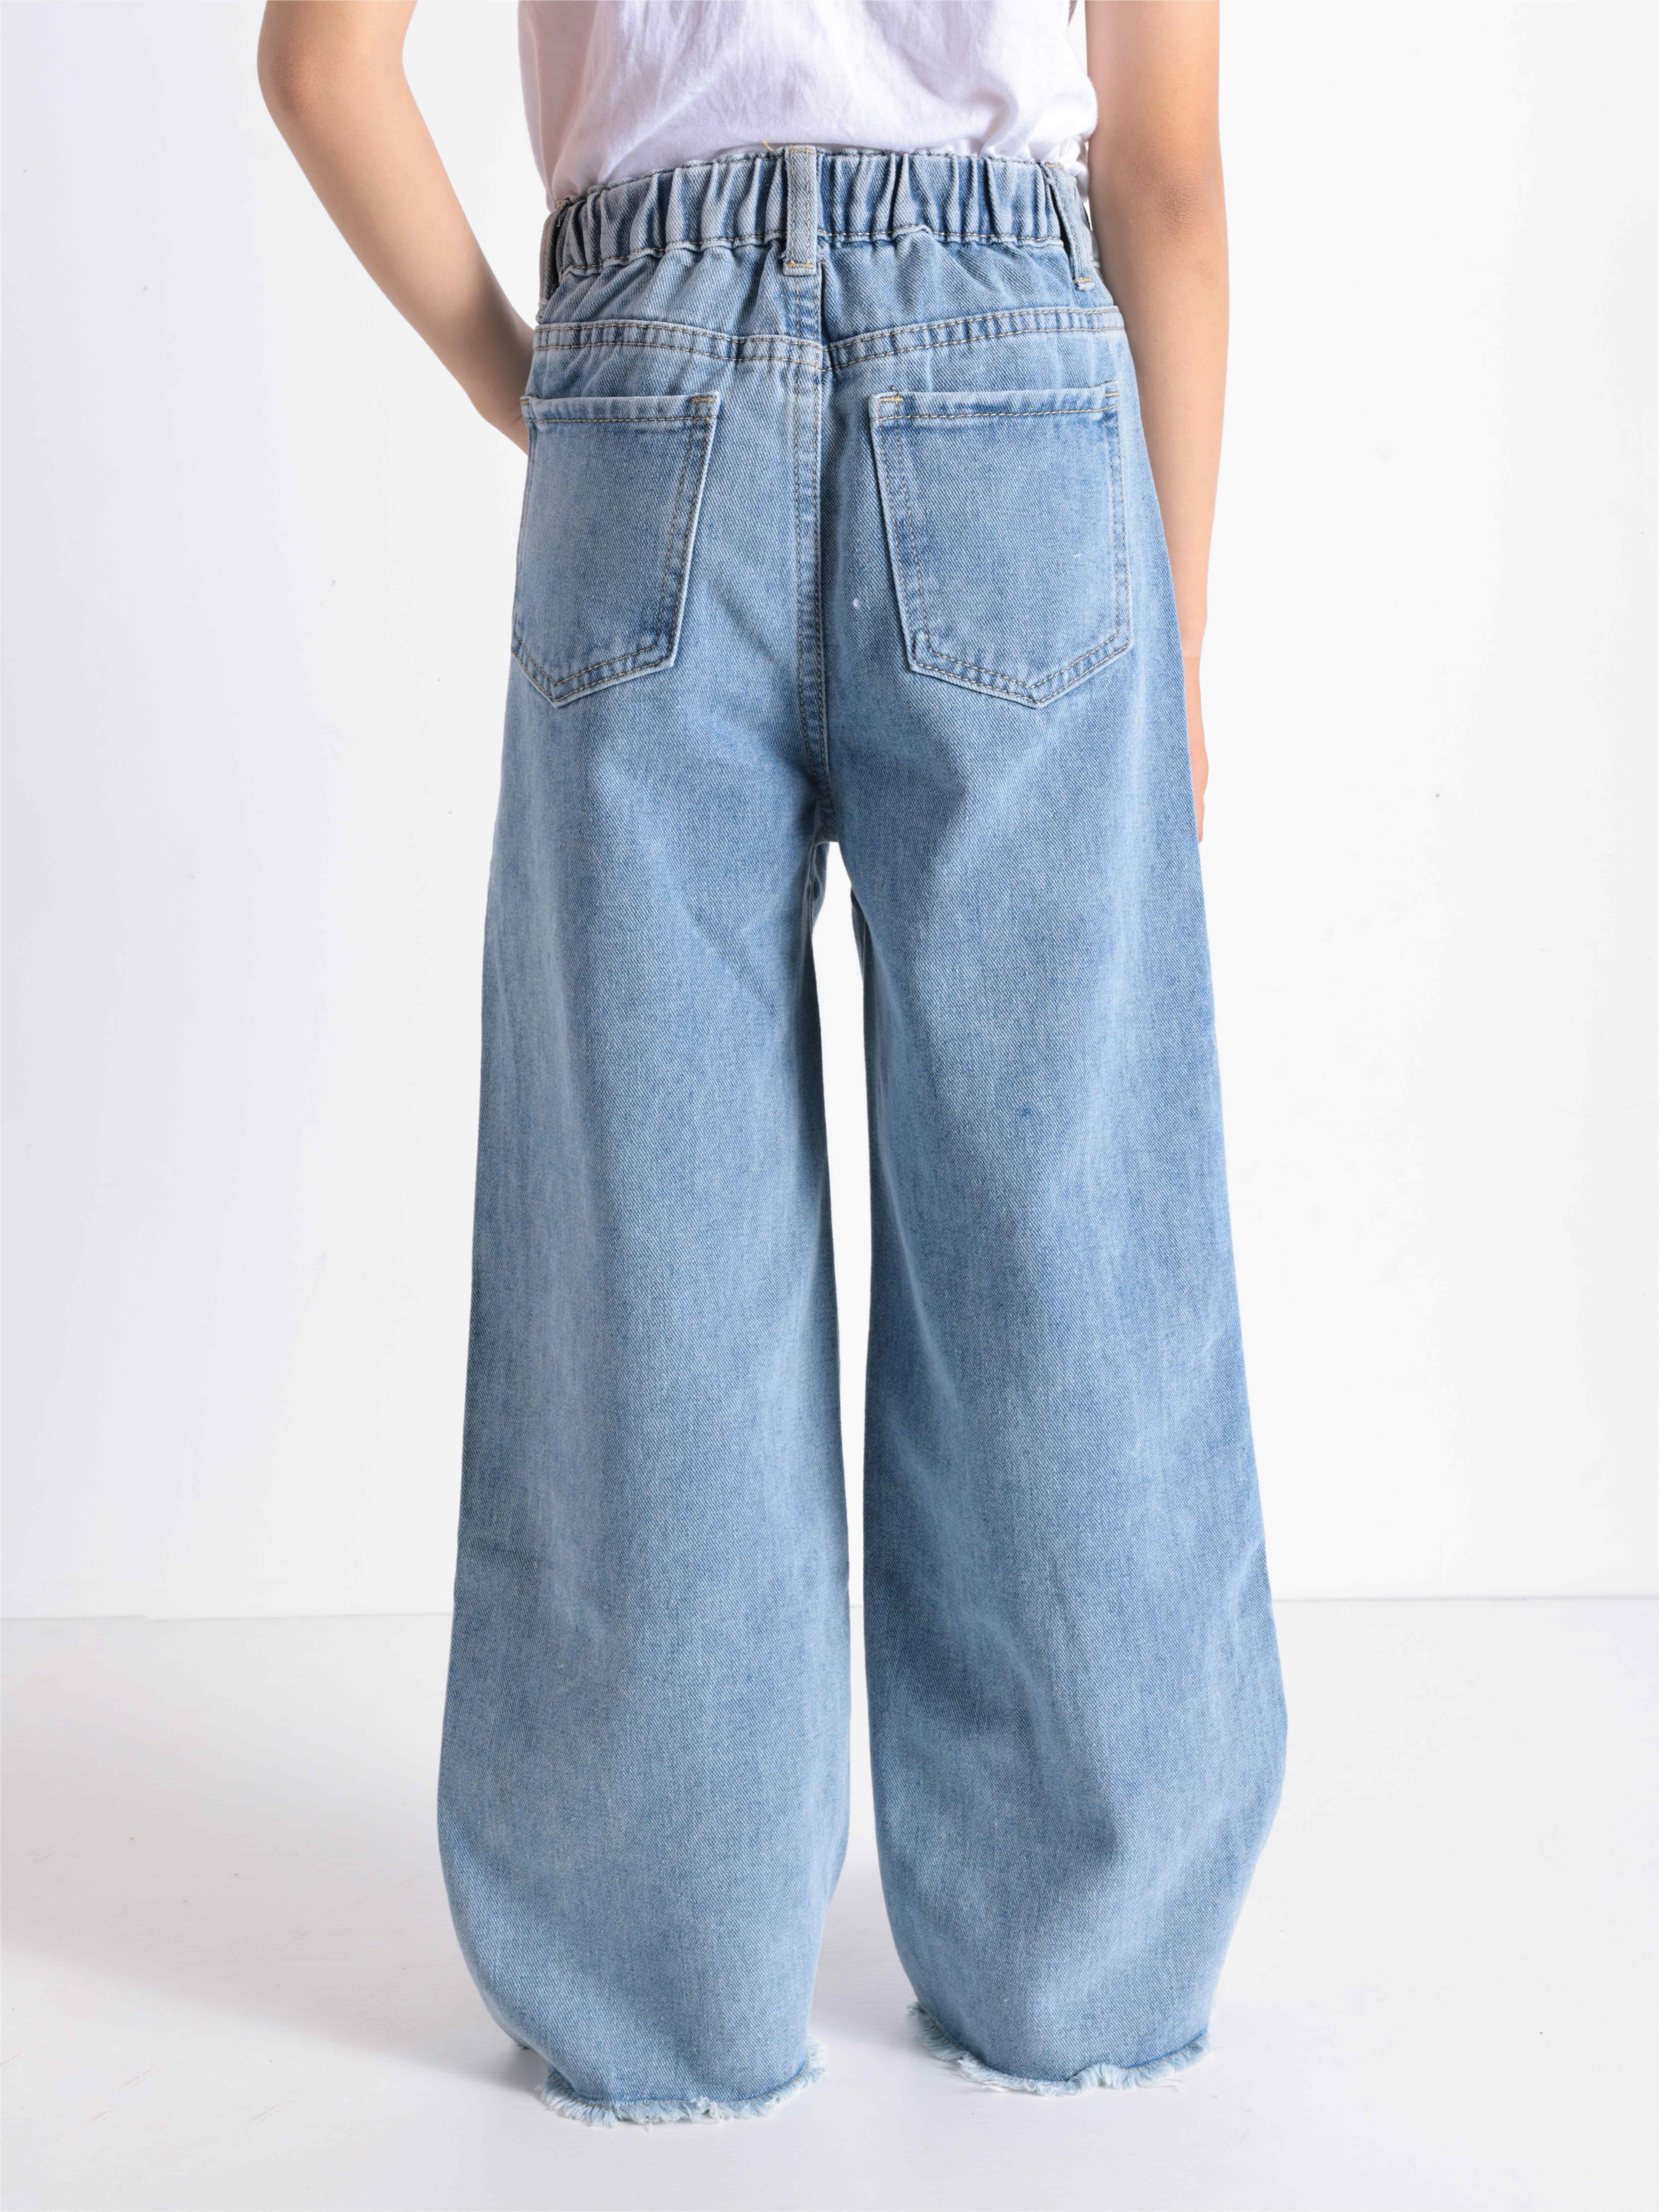 Denim Patch Pattern Design Teen Girls Fashion Loose Pants, 4